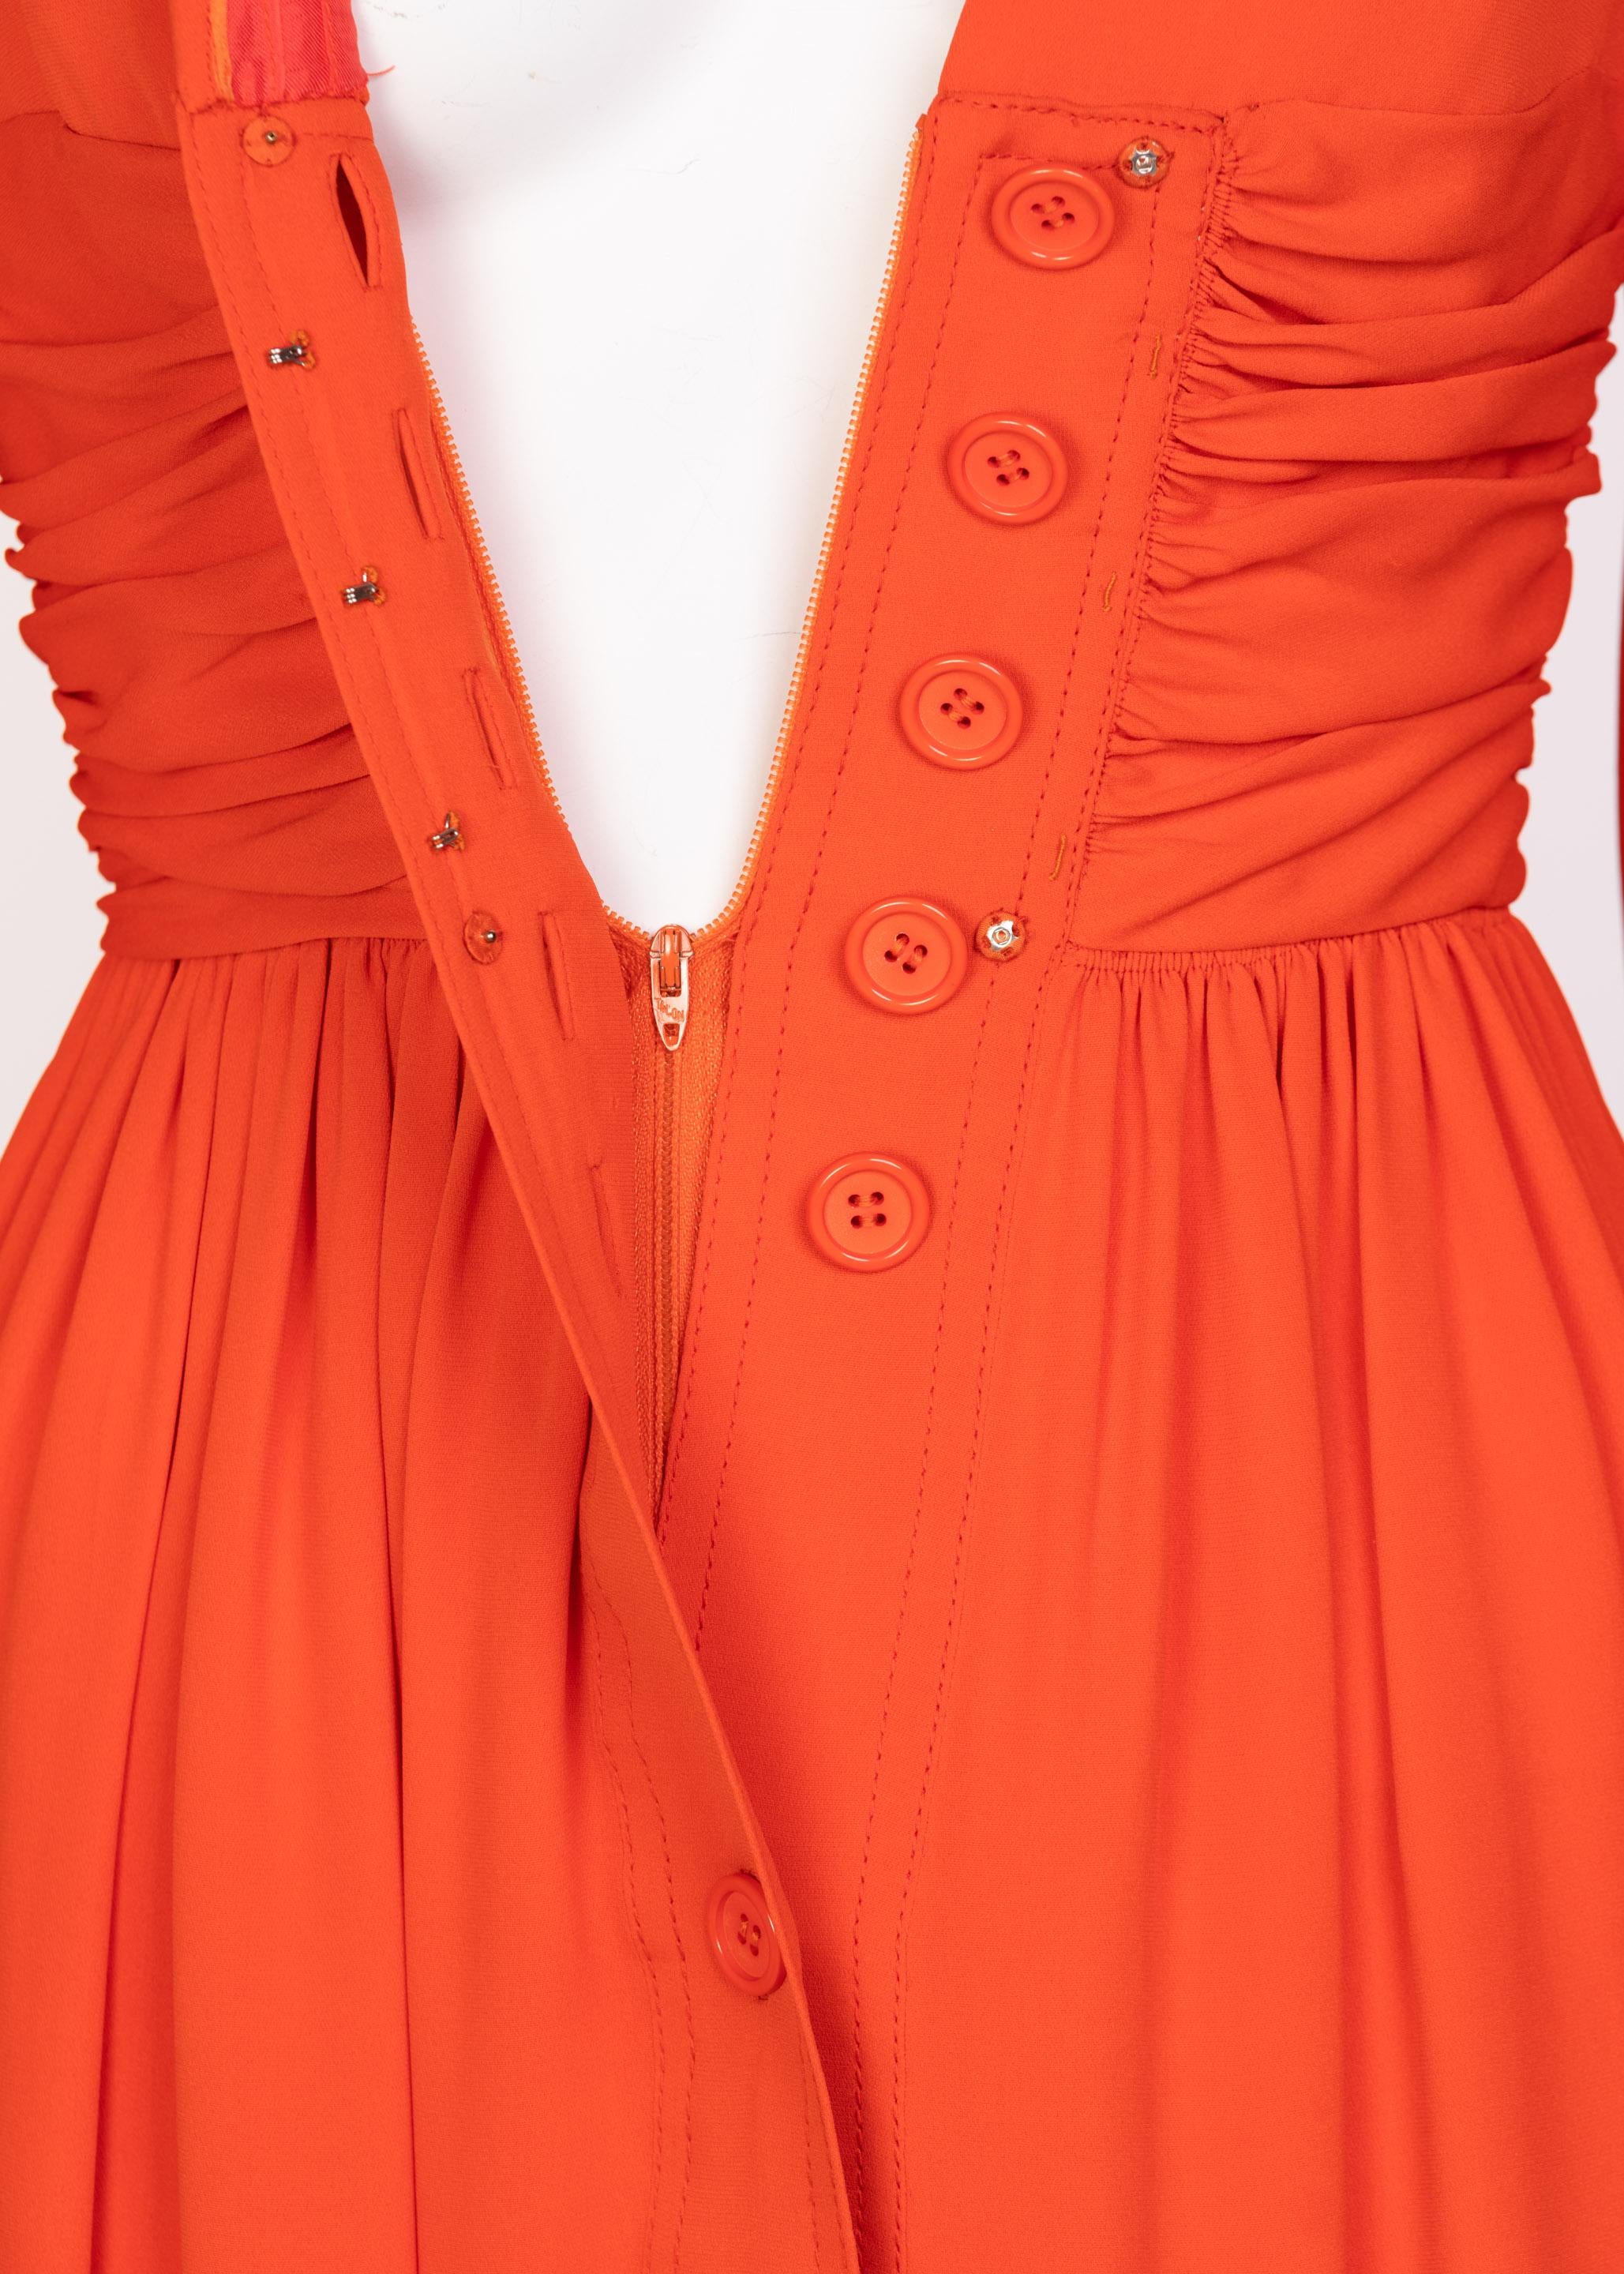 Galanos Orange Silk Plunge Neck Bishop Sleeve Dress, 1970s 1